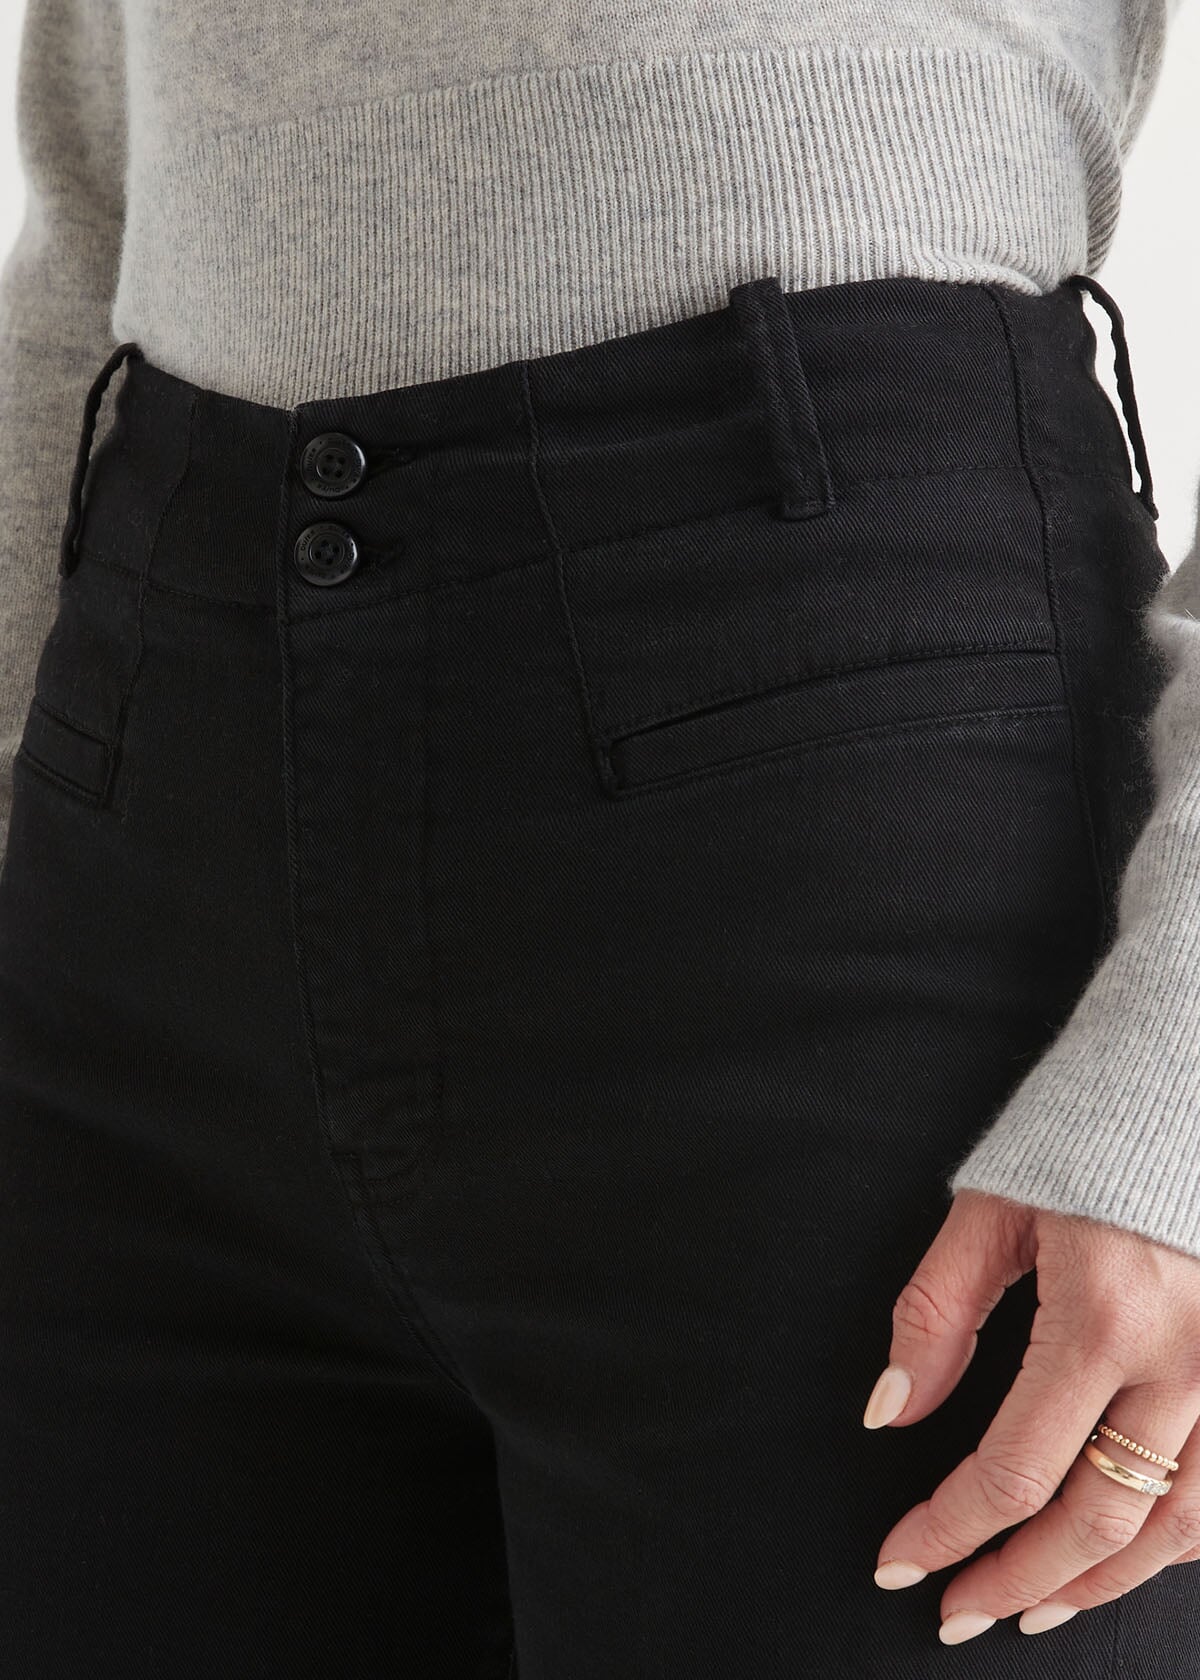 The DUER Black Stretch Tech Pants Belong In Every Closet - InsideHook